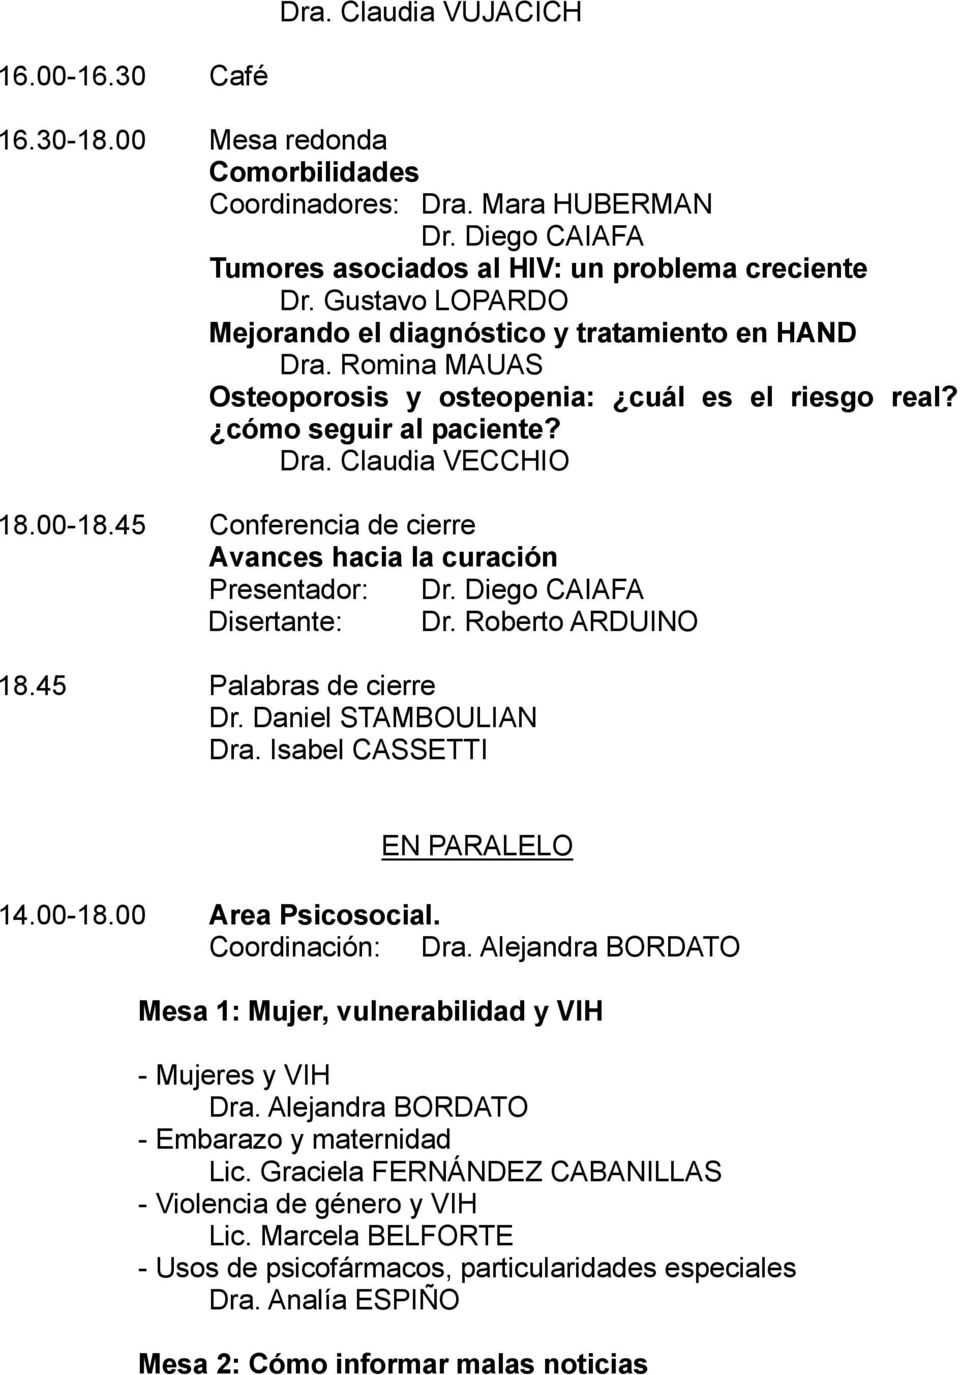 45 Conferencia de cierre Avances hacia la curación Presentador: Dr. Diego CAIAFA Disertante: Dr. Roberto ARDUINO 18.45 Palabras de cierre Dr. Daniel STAMBOULIAN EN PARALELO 14.00-18.